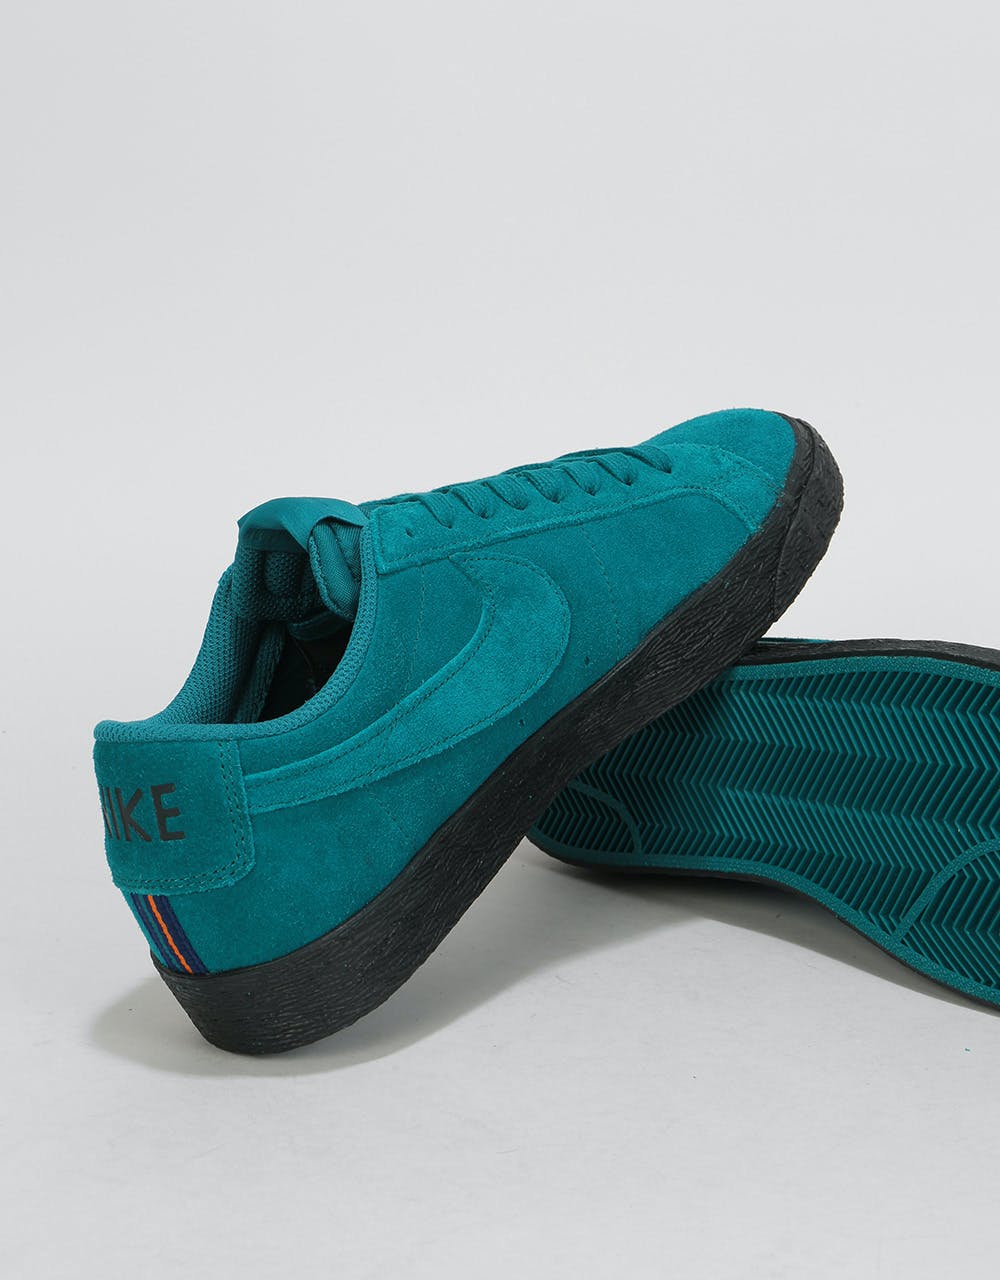 Nike SB Zoom Blazer Low Skate Shoes - Geode Teal/Geode Teal-Black